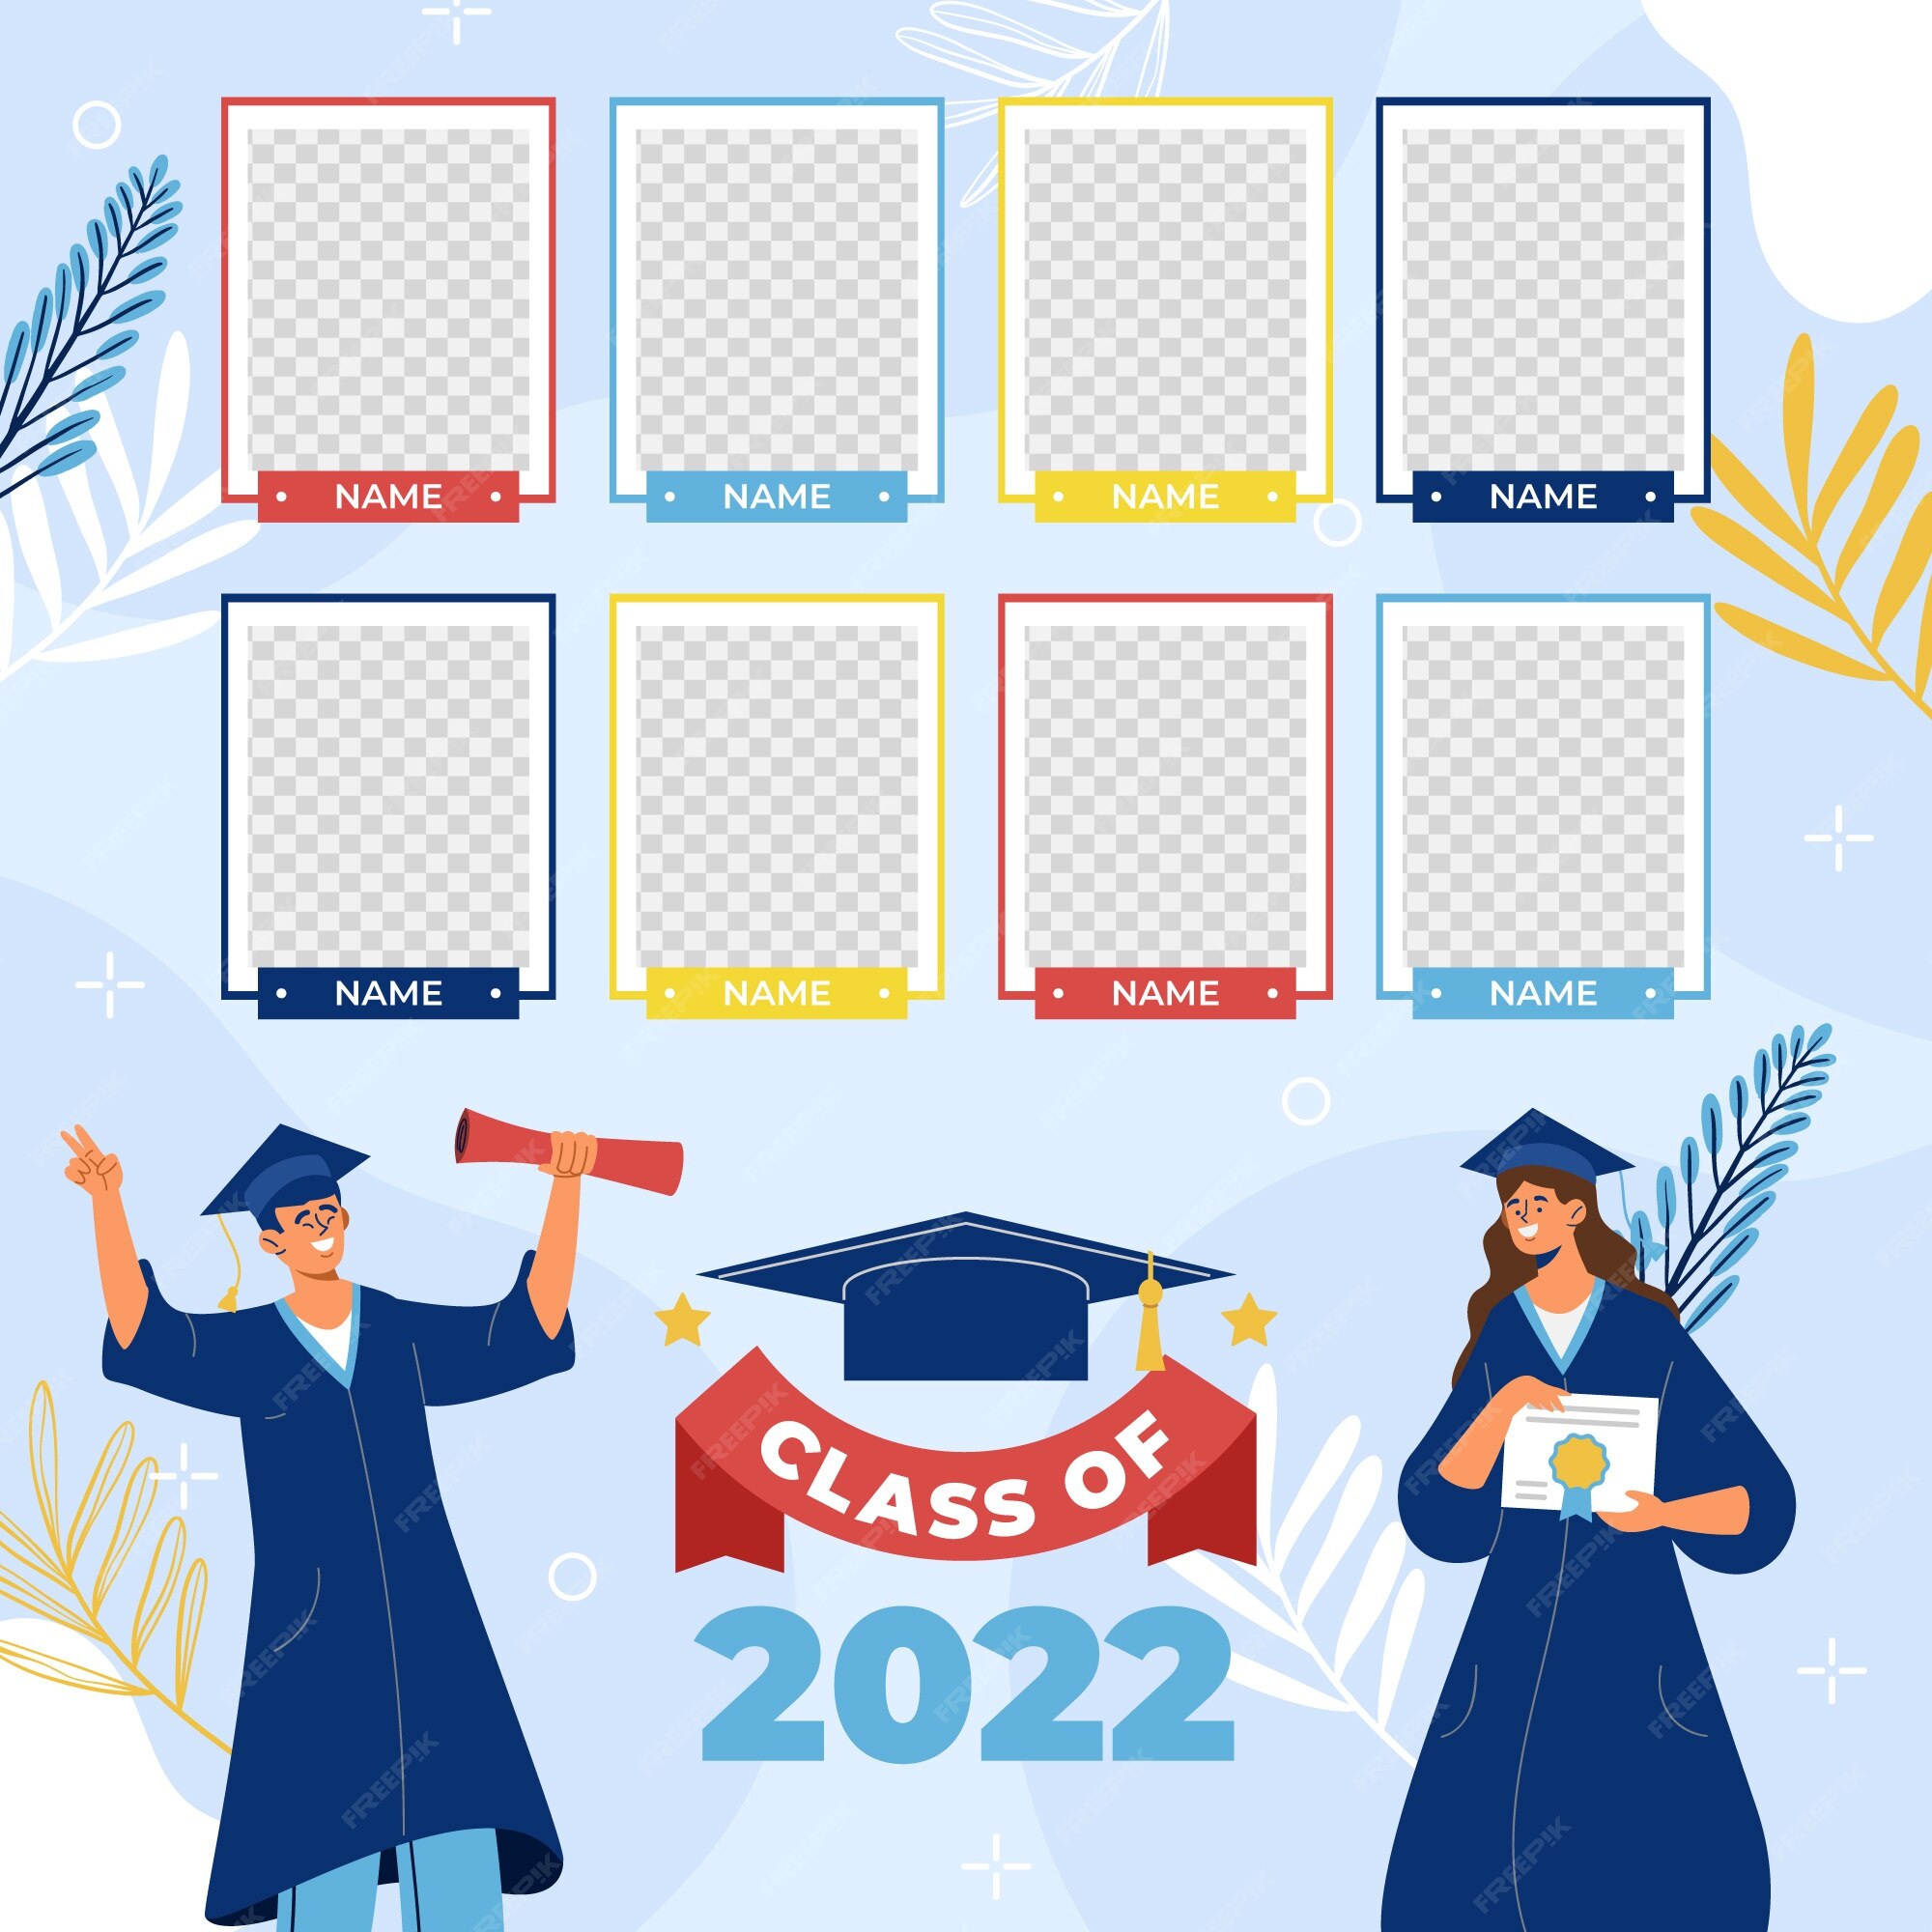 Mẫu sổ tay lớp năm 2022: Mẫu sổ tay lớp năm 2022 đầy màu sắc và tươi trẻ sẽ giúp các bạn học sinh ghi nhớ những kỷ niệm tuyệt vời trong năm học tiếp theo. Hãy xem ảnh để được chiêm ngưỡng sự đáng yêu của mẫu sổ tay này!